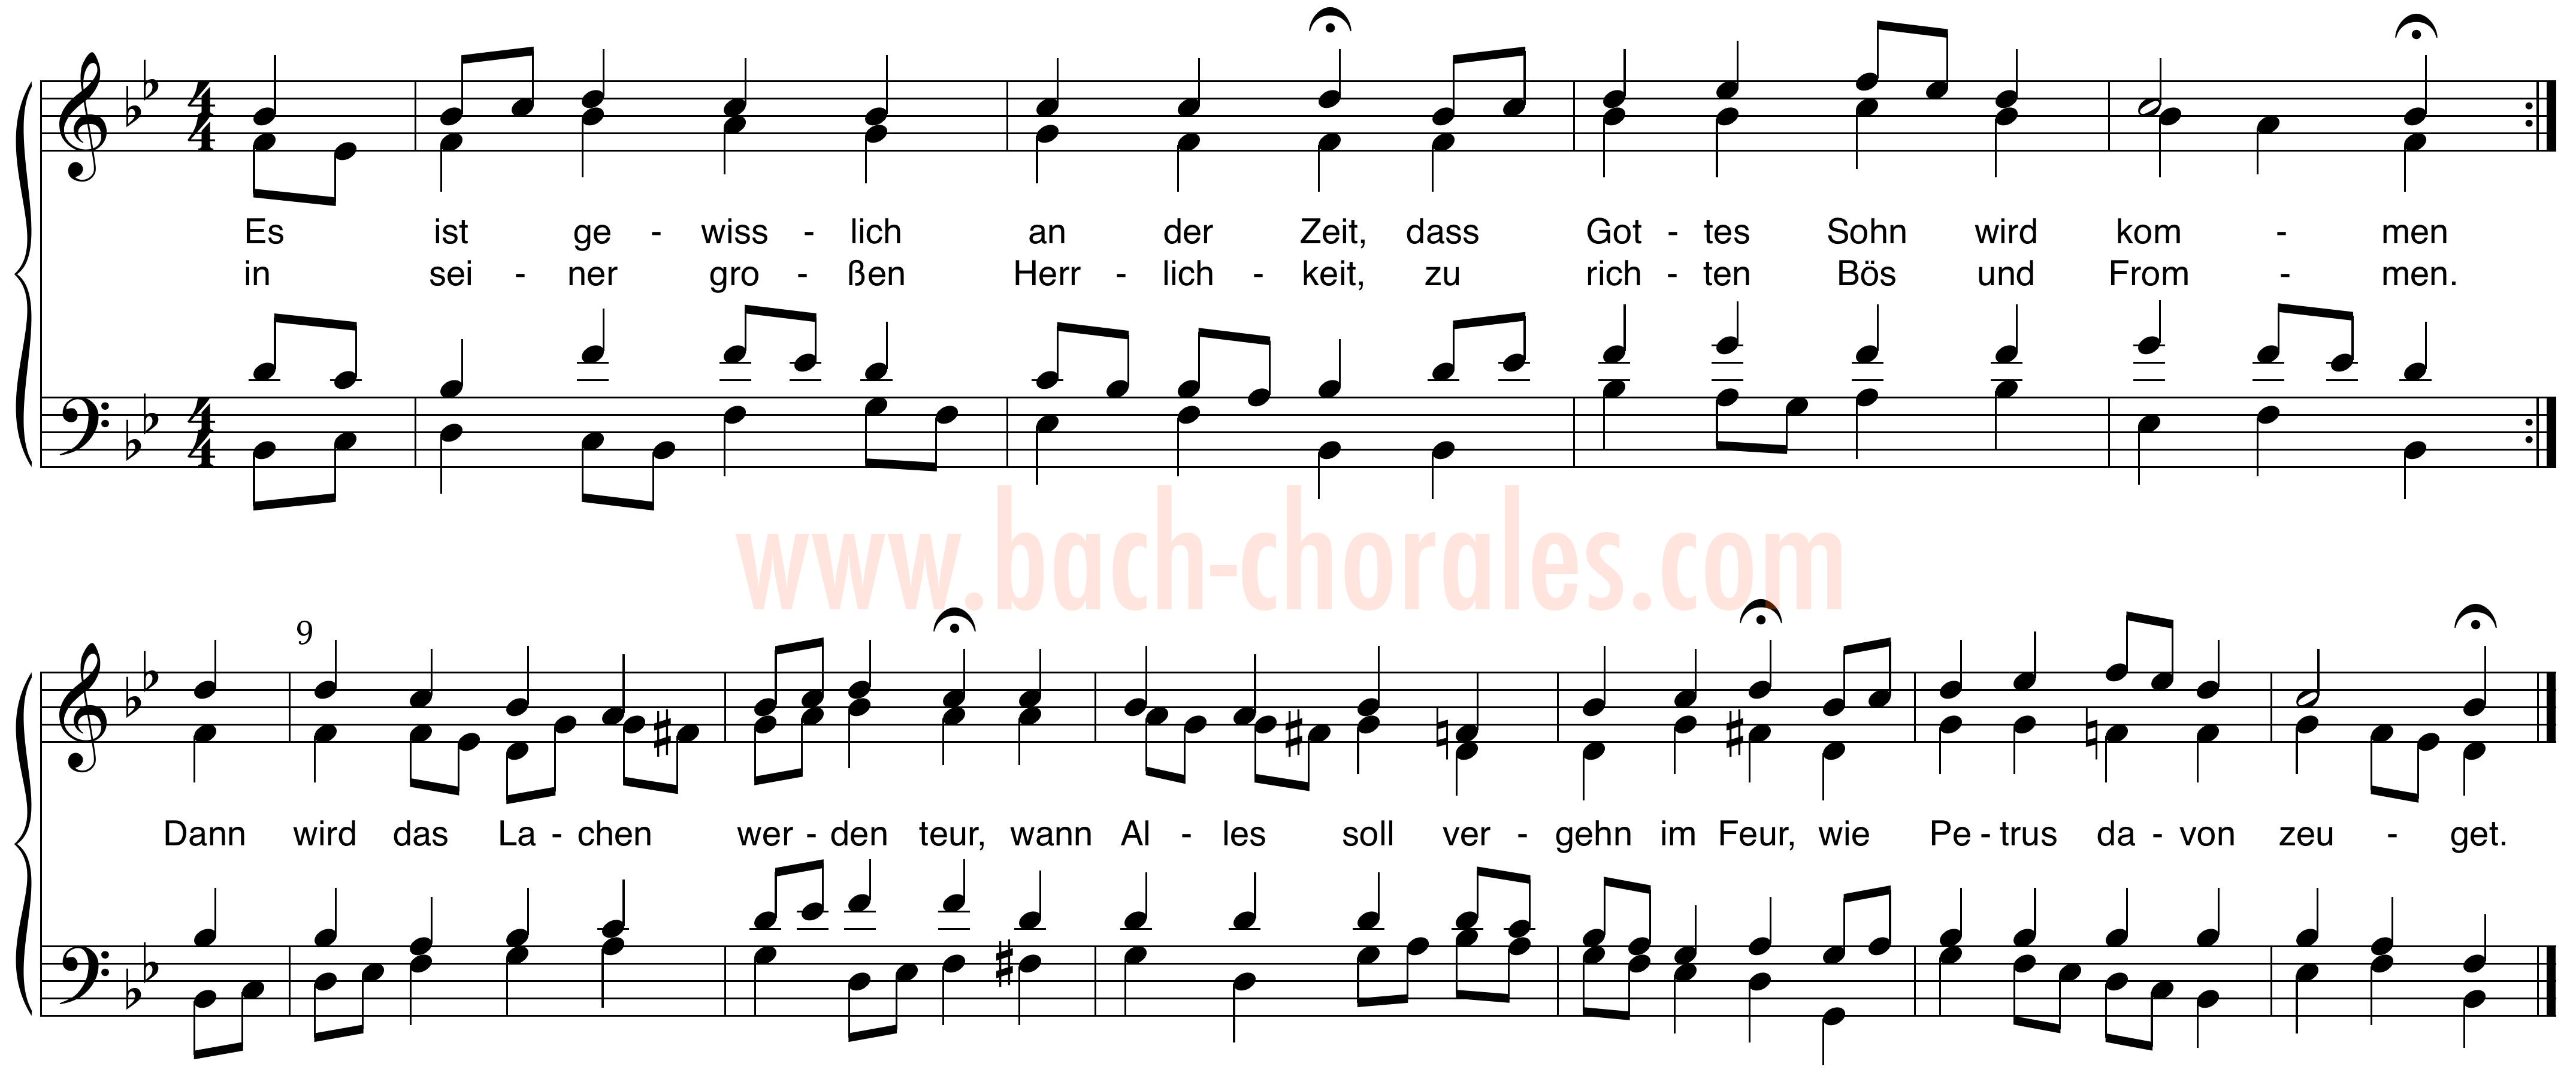 notenbeeld BWV 307 op https://www.bach-chorales.com/